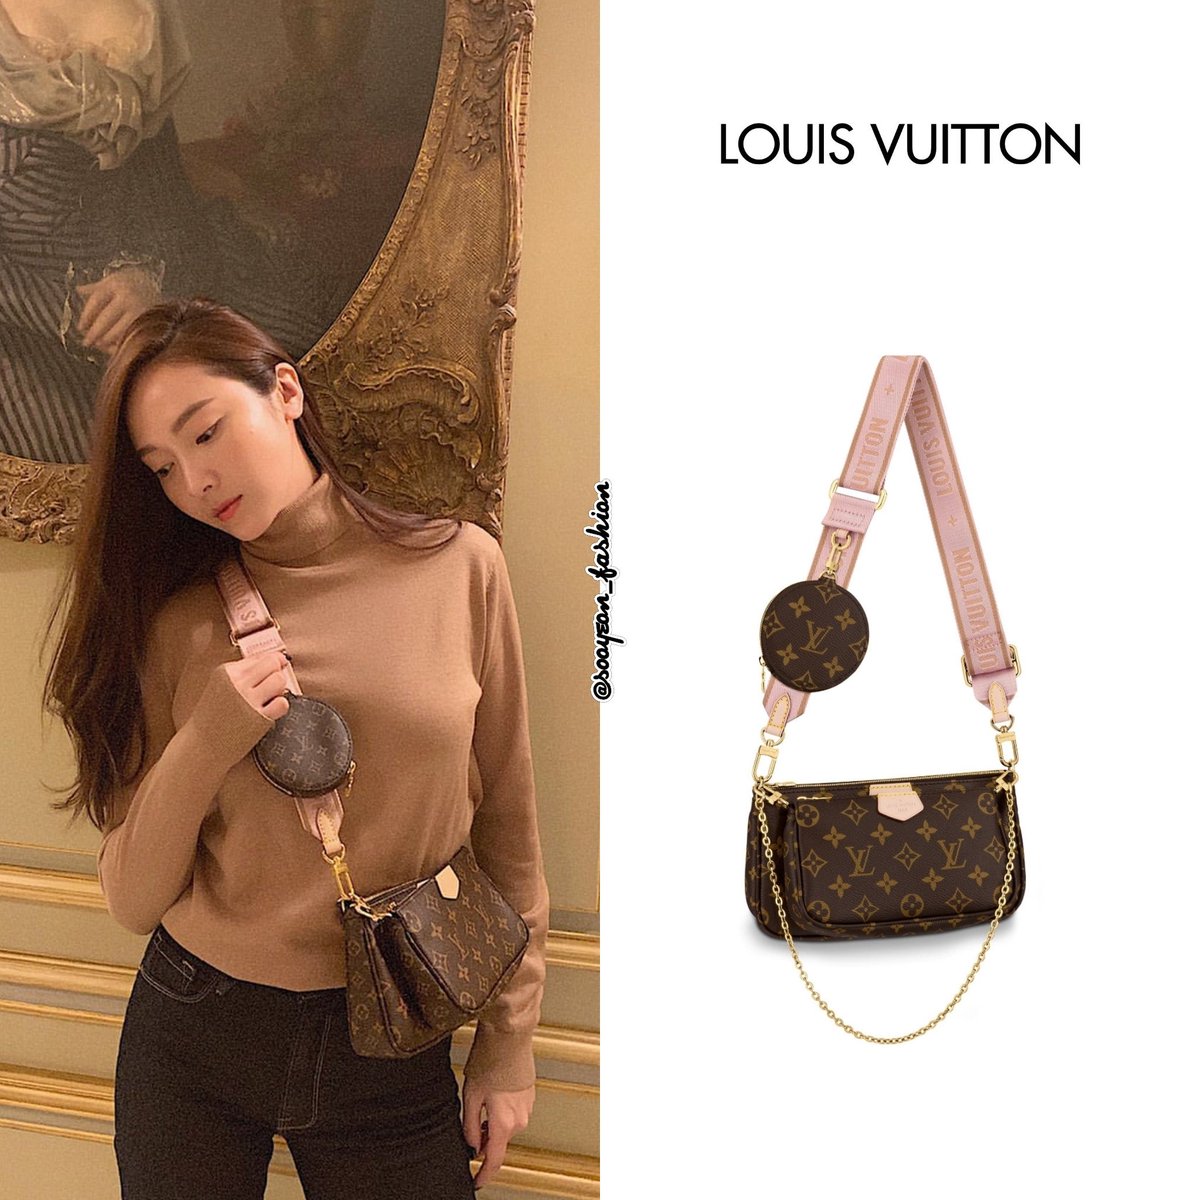 Pin by Lauren on fashion + beauty  Louis vuitton multi pochette, Vuitton  outfit, Louis vuitton wallet